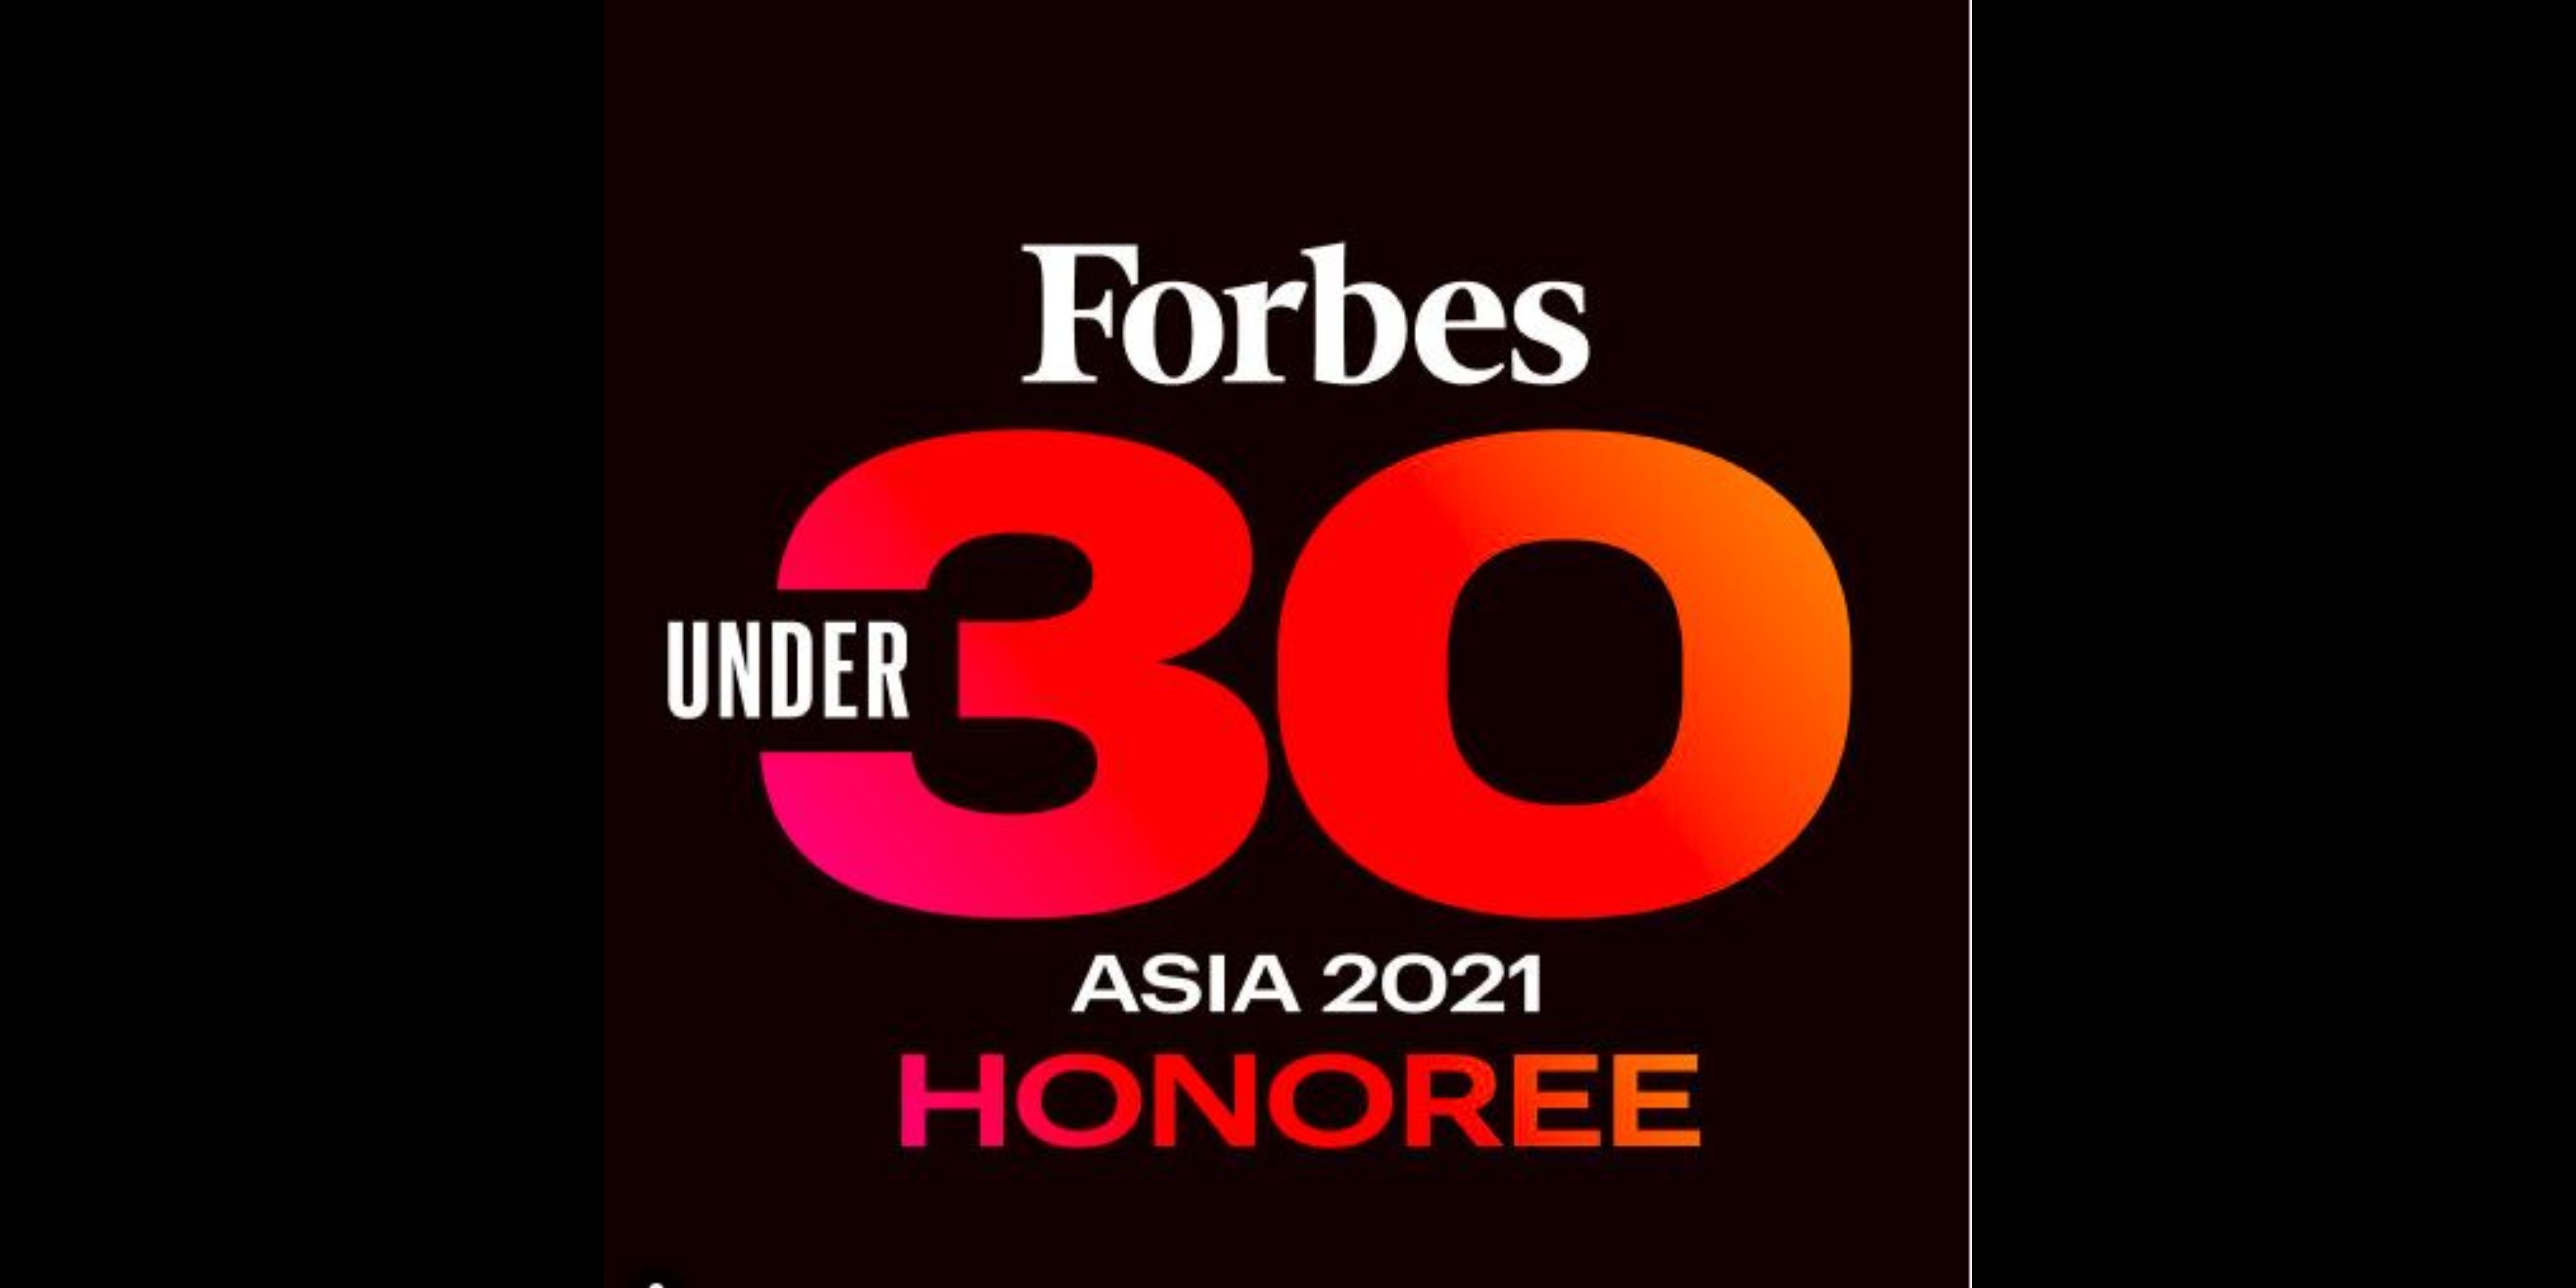 Daftar Lengkap 26 Milenial dan Gen Z Asal Indonesia yang Masuk Forbes 30 Under 30 Asia 2021